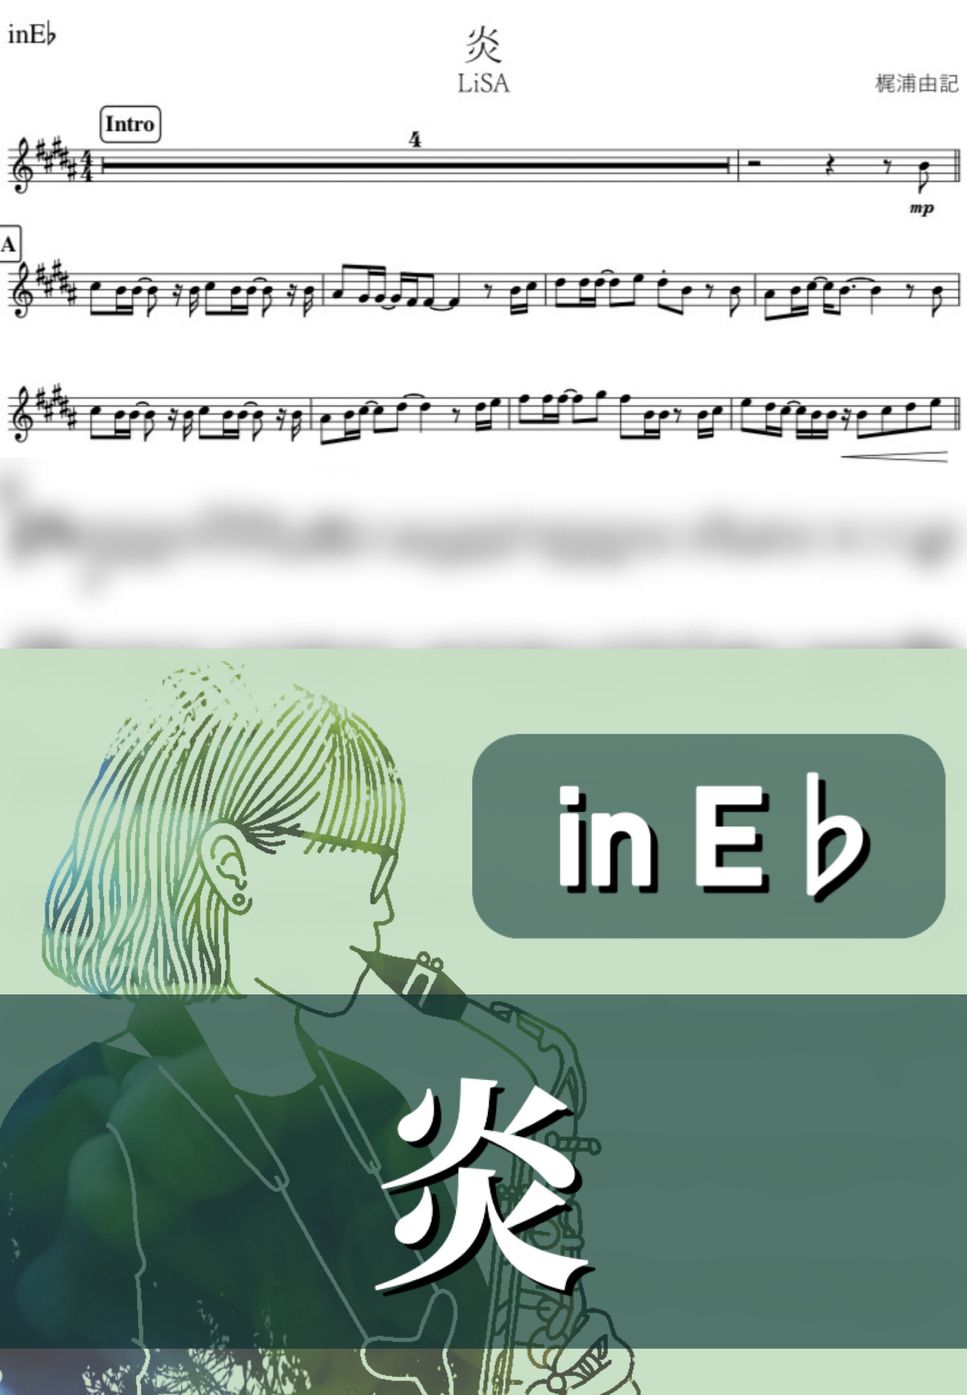 LiSA - 炎 (E♭) by kanamusic